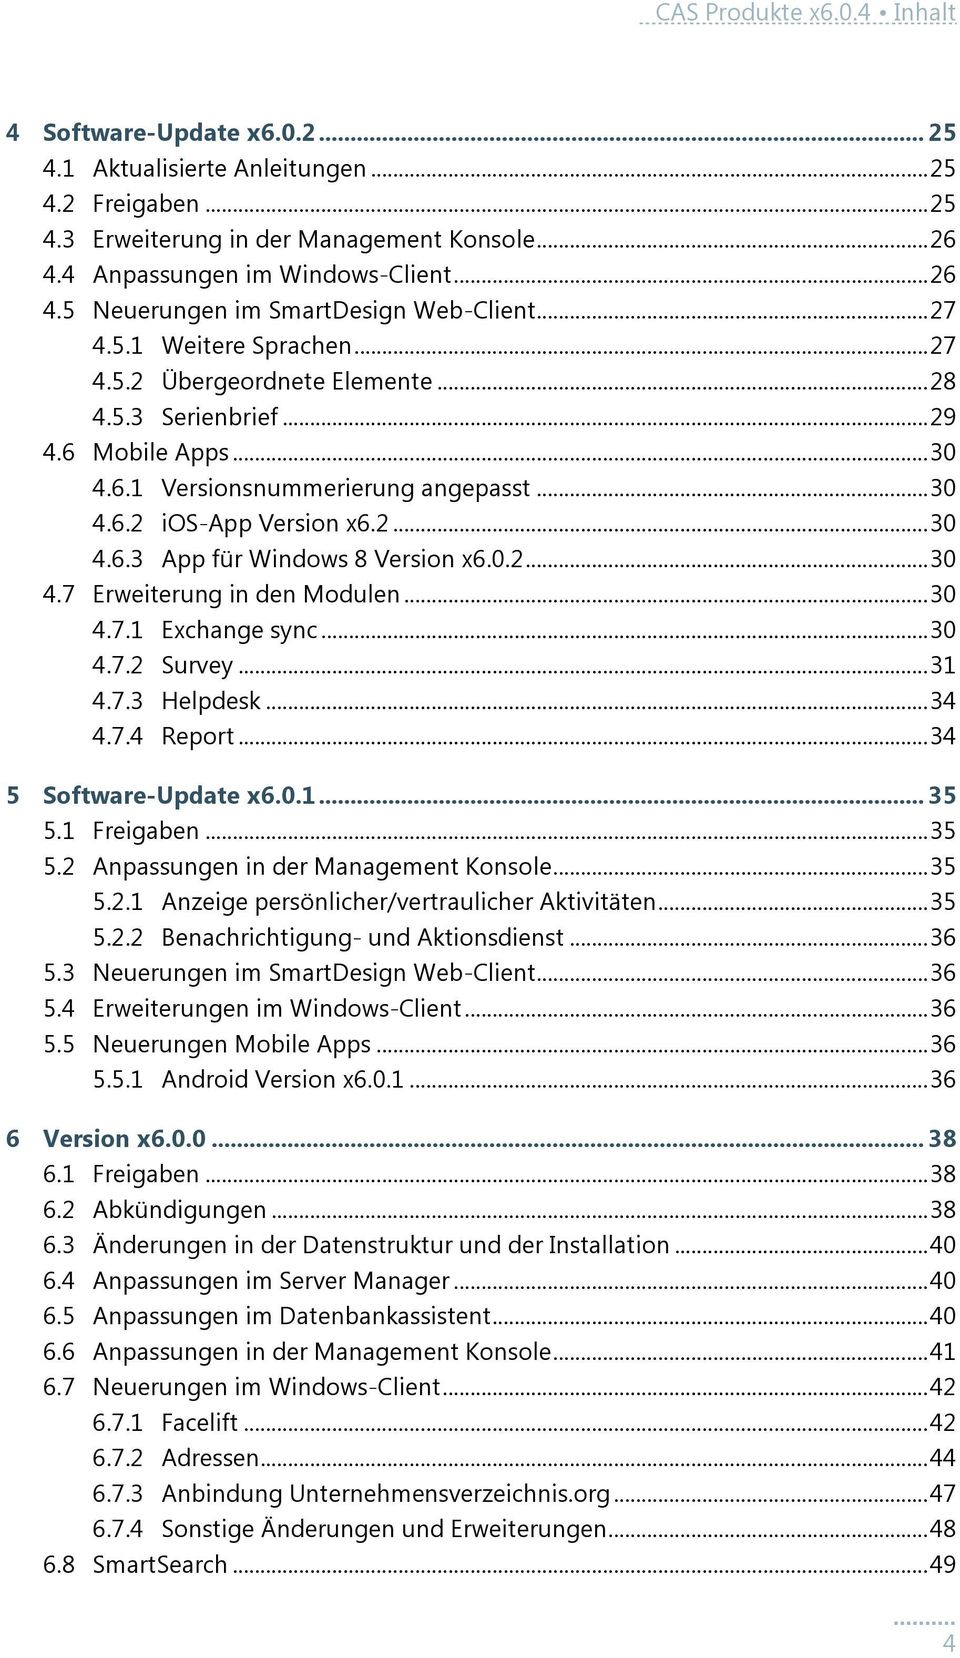 .. 30 4.6.2 ios-app Version x6.2... 30 4.6.3 App für Windows 8 Version x6.0.2... 30 4.7 Erweiterung in den Modulen... 30 4.7.1 Exchange sync... 30 4.7.2 Survey... 31 4.7.3 Helpdesk... 34 4.7.4 Report.